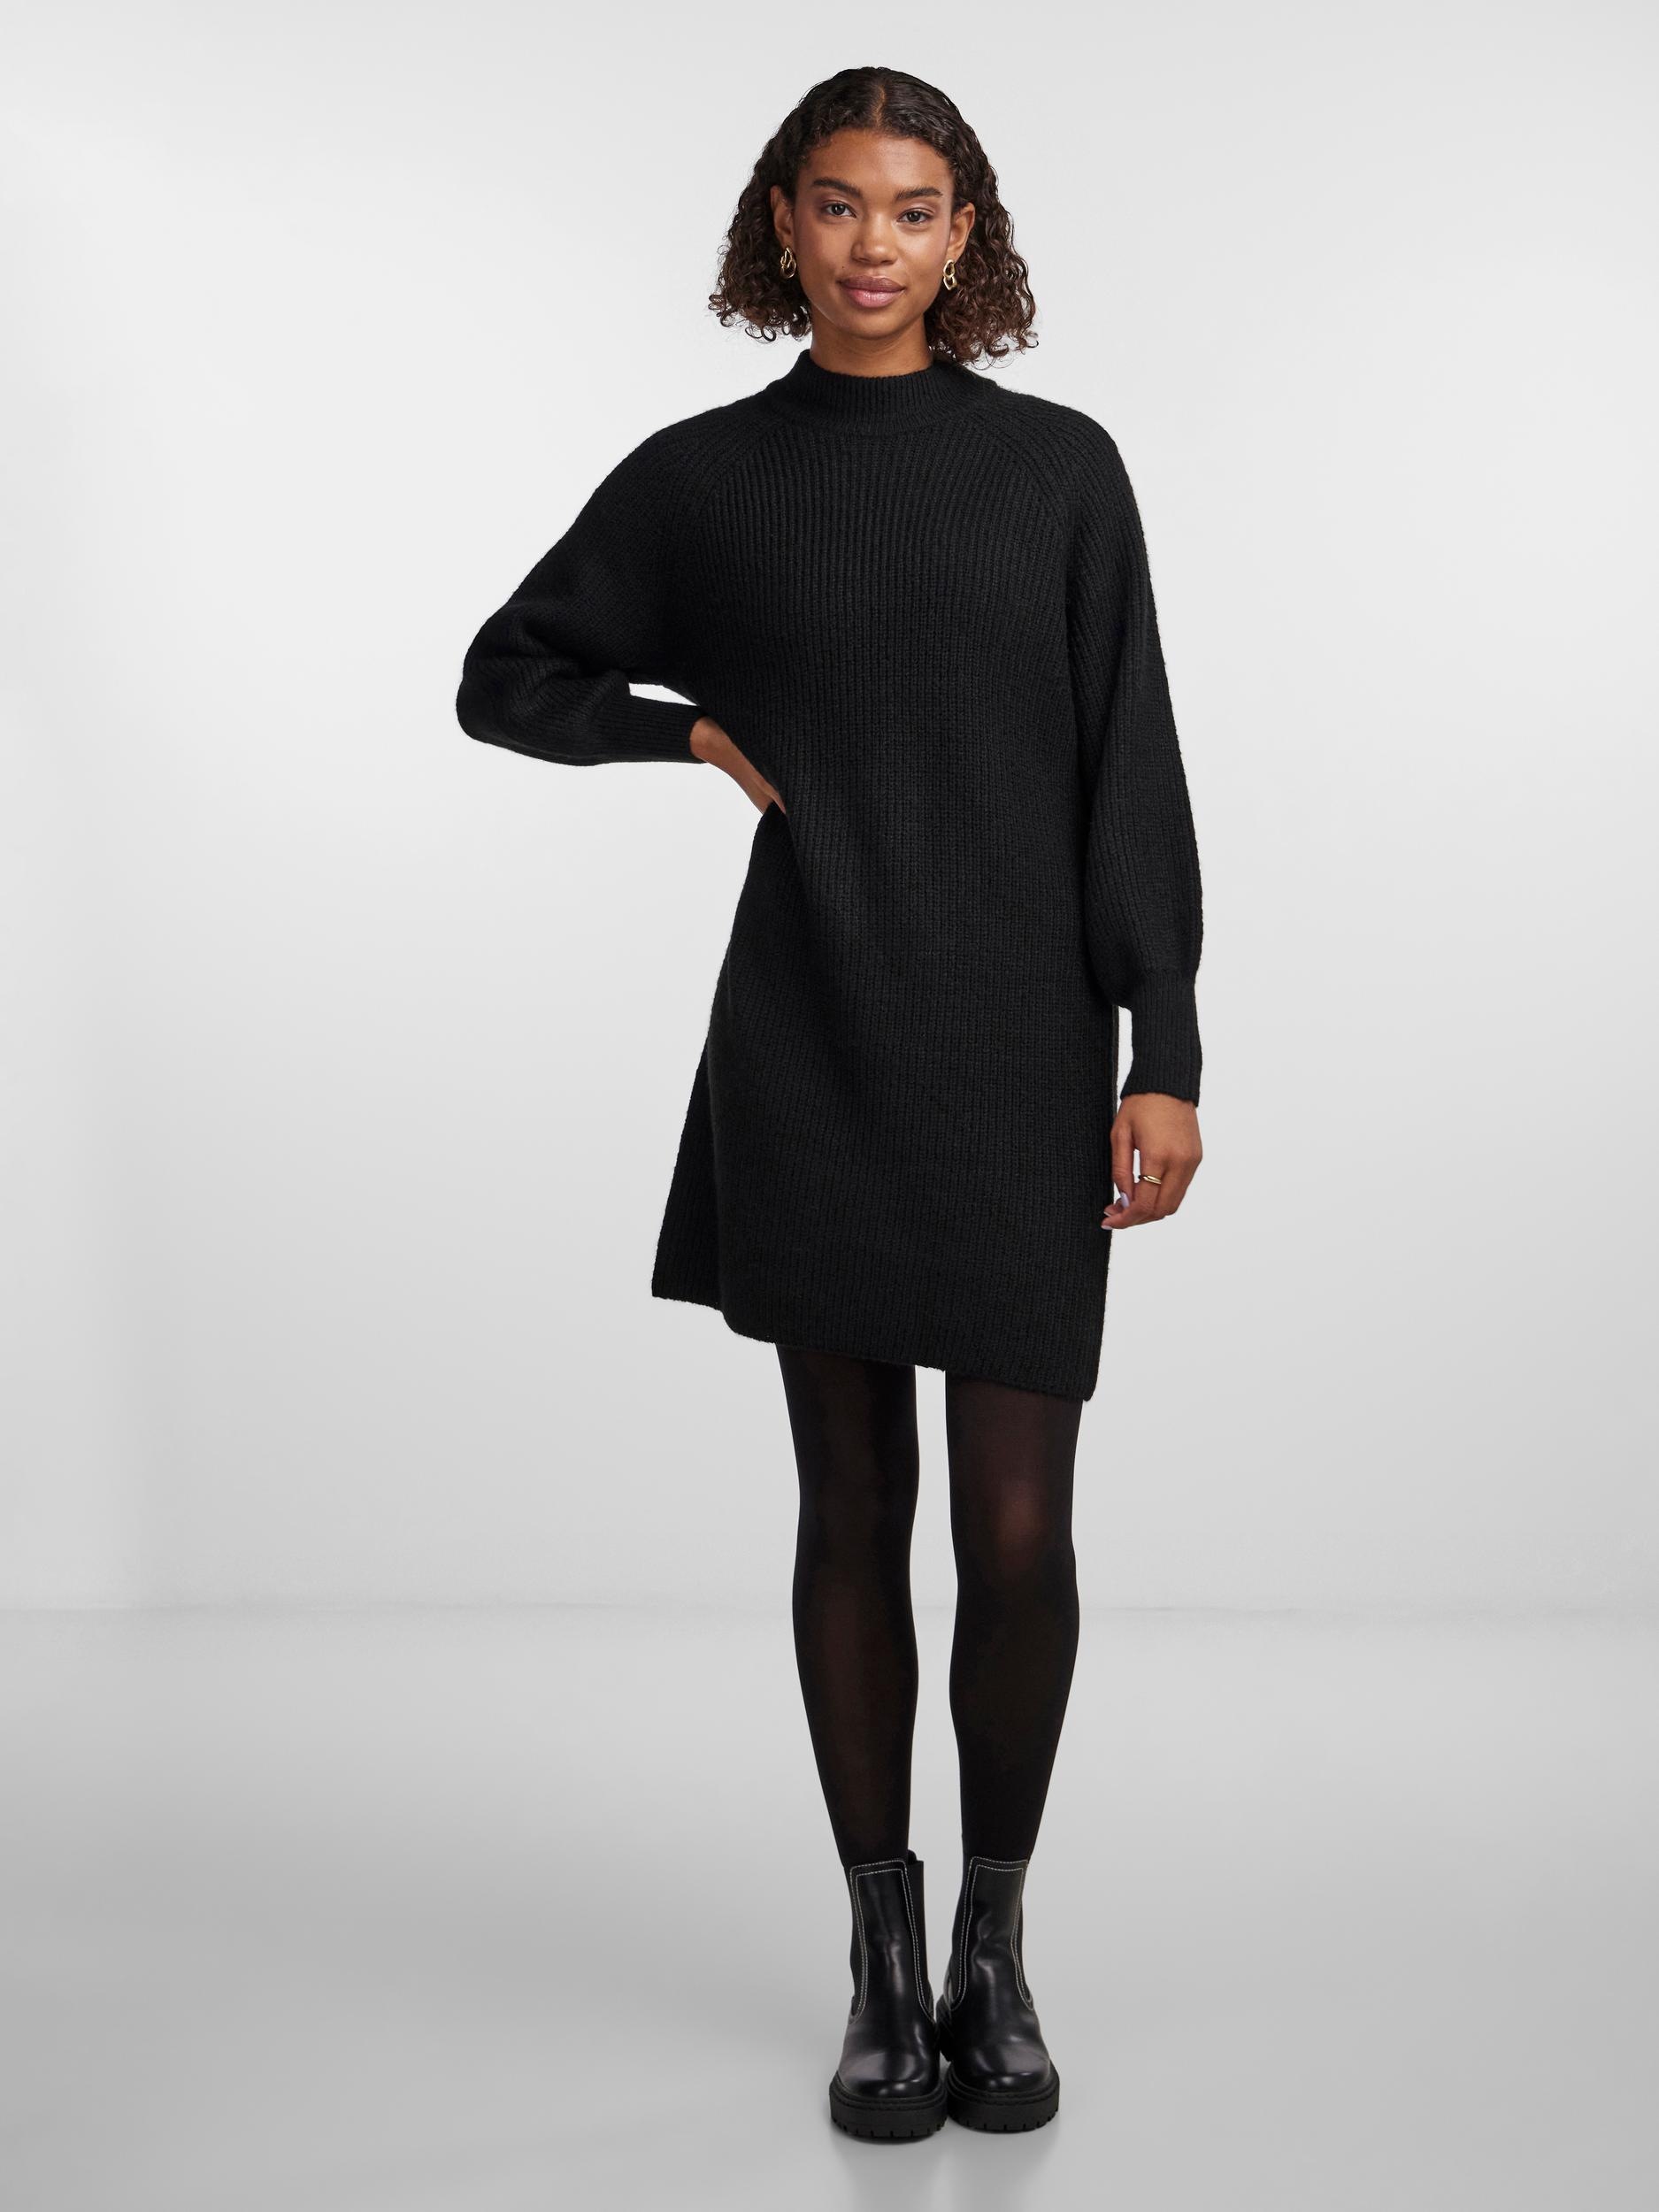 BAUR KNIT DRESS online pieces NOOS LS »PCNATALEE | kaufen Strickkleid BC« O-NECK